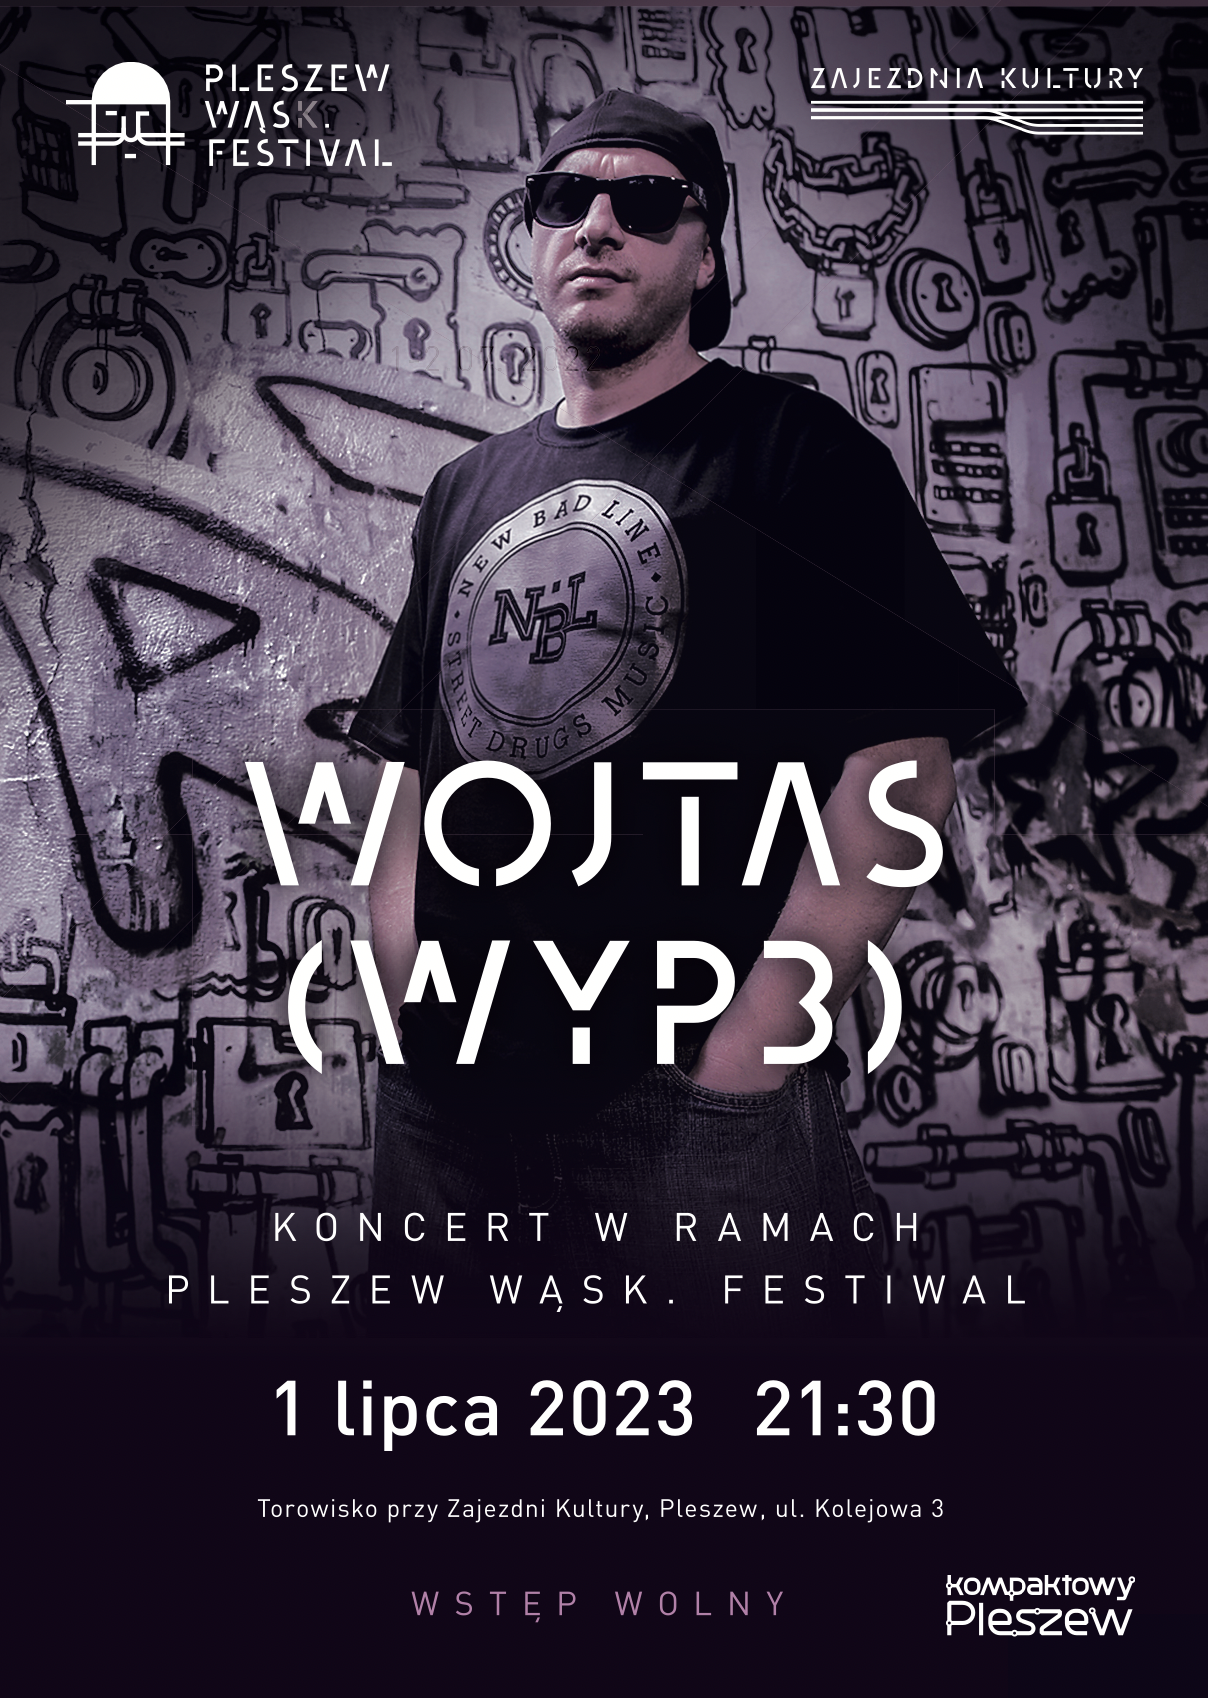 Plakat koncertu Wojtasa (WYP3) odbywającego się w ramach Pleszew Wąsk. Festiwal 1 lipca 2023 roku o godzinie 21:30 na torowisku przy Zajezdni Kultury w Pleszewie.